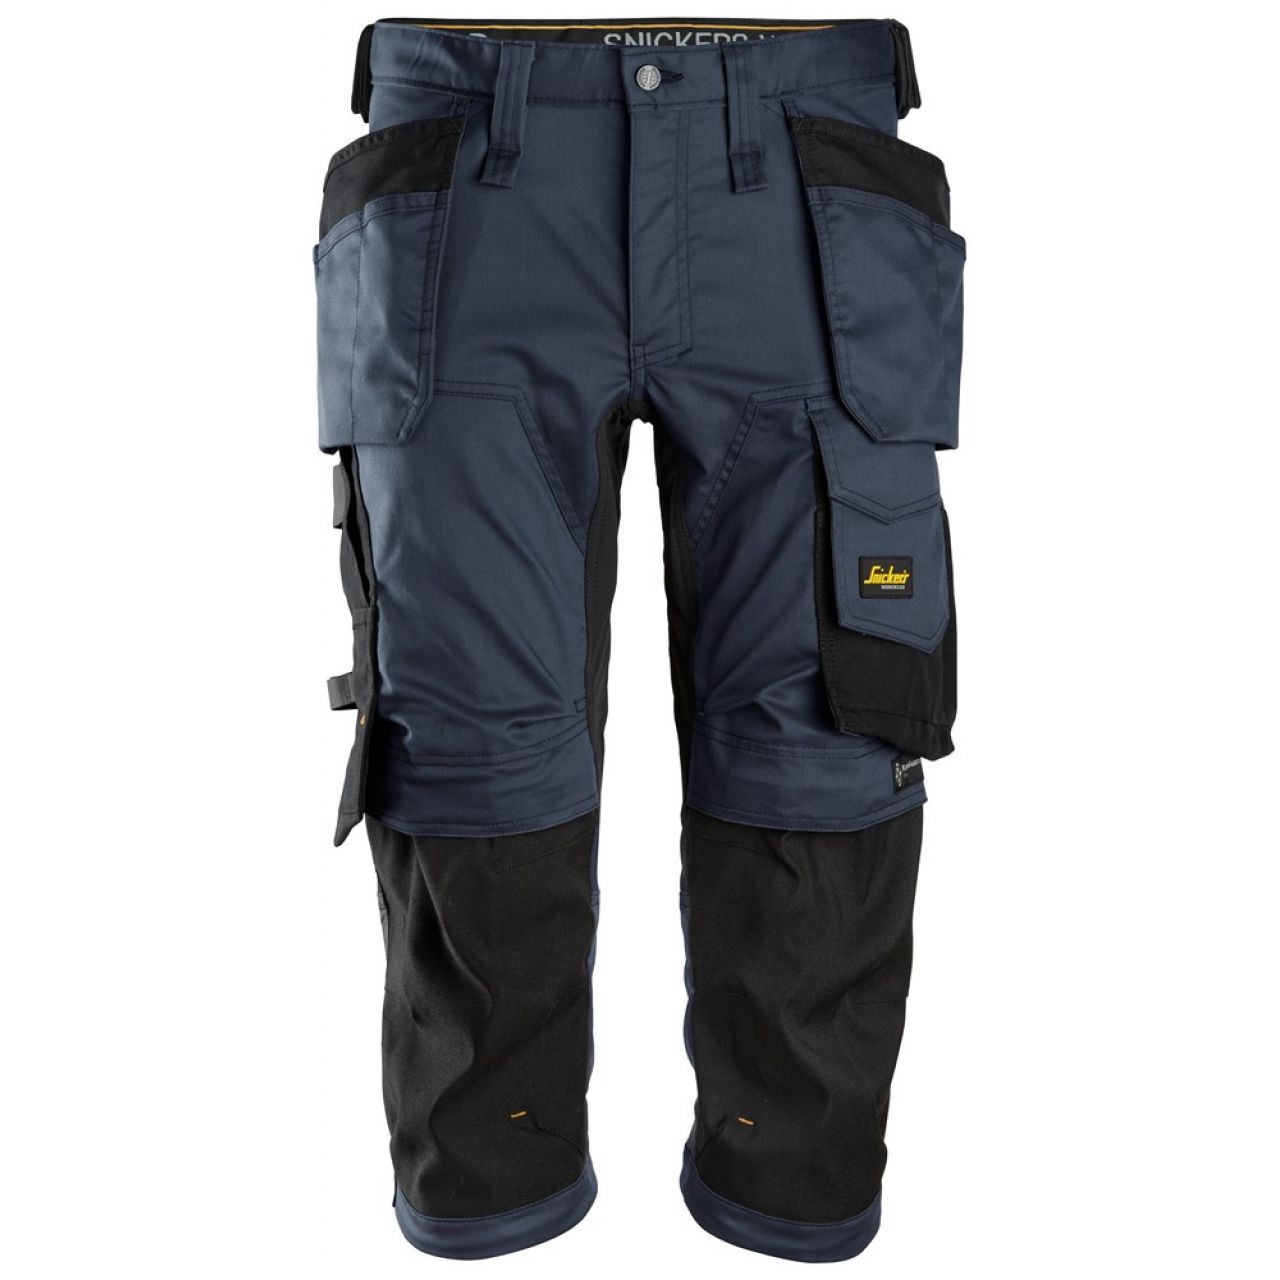 6142 Pantalones pirata de trabajo elasticos con bolsillos flotantes AllroundWork azul marino-negro talla 92